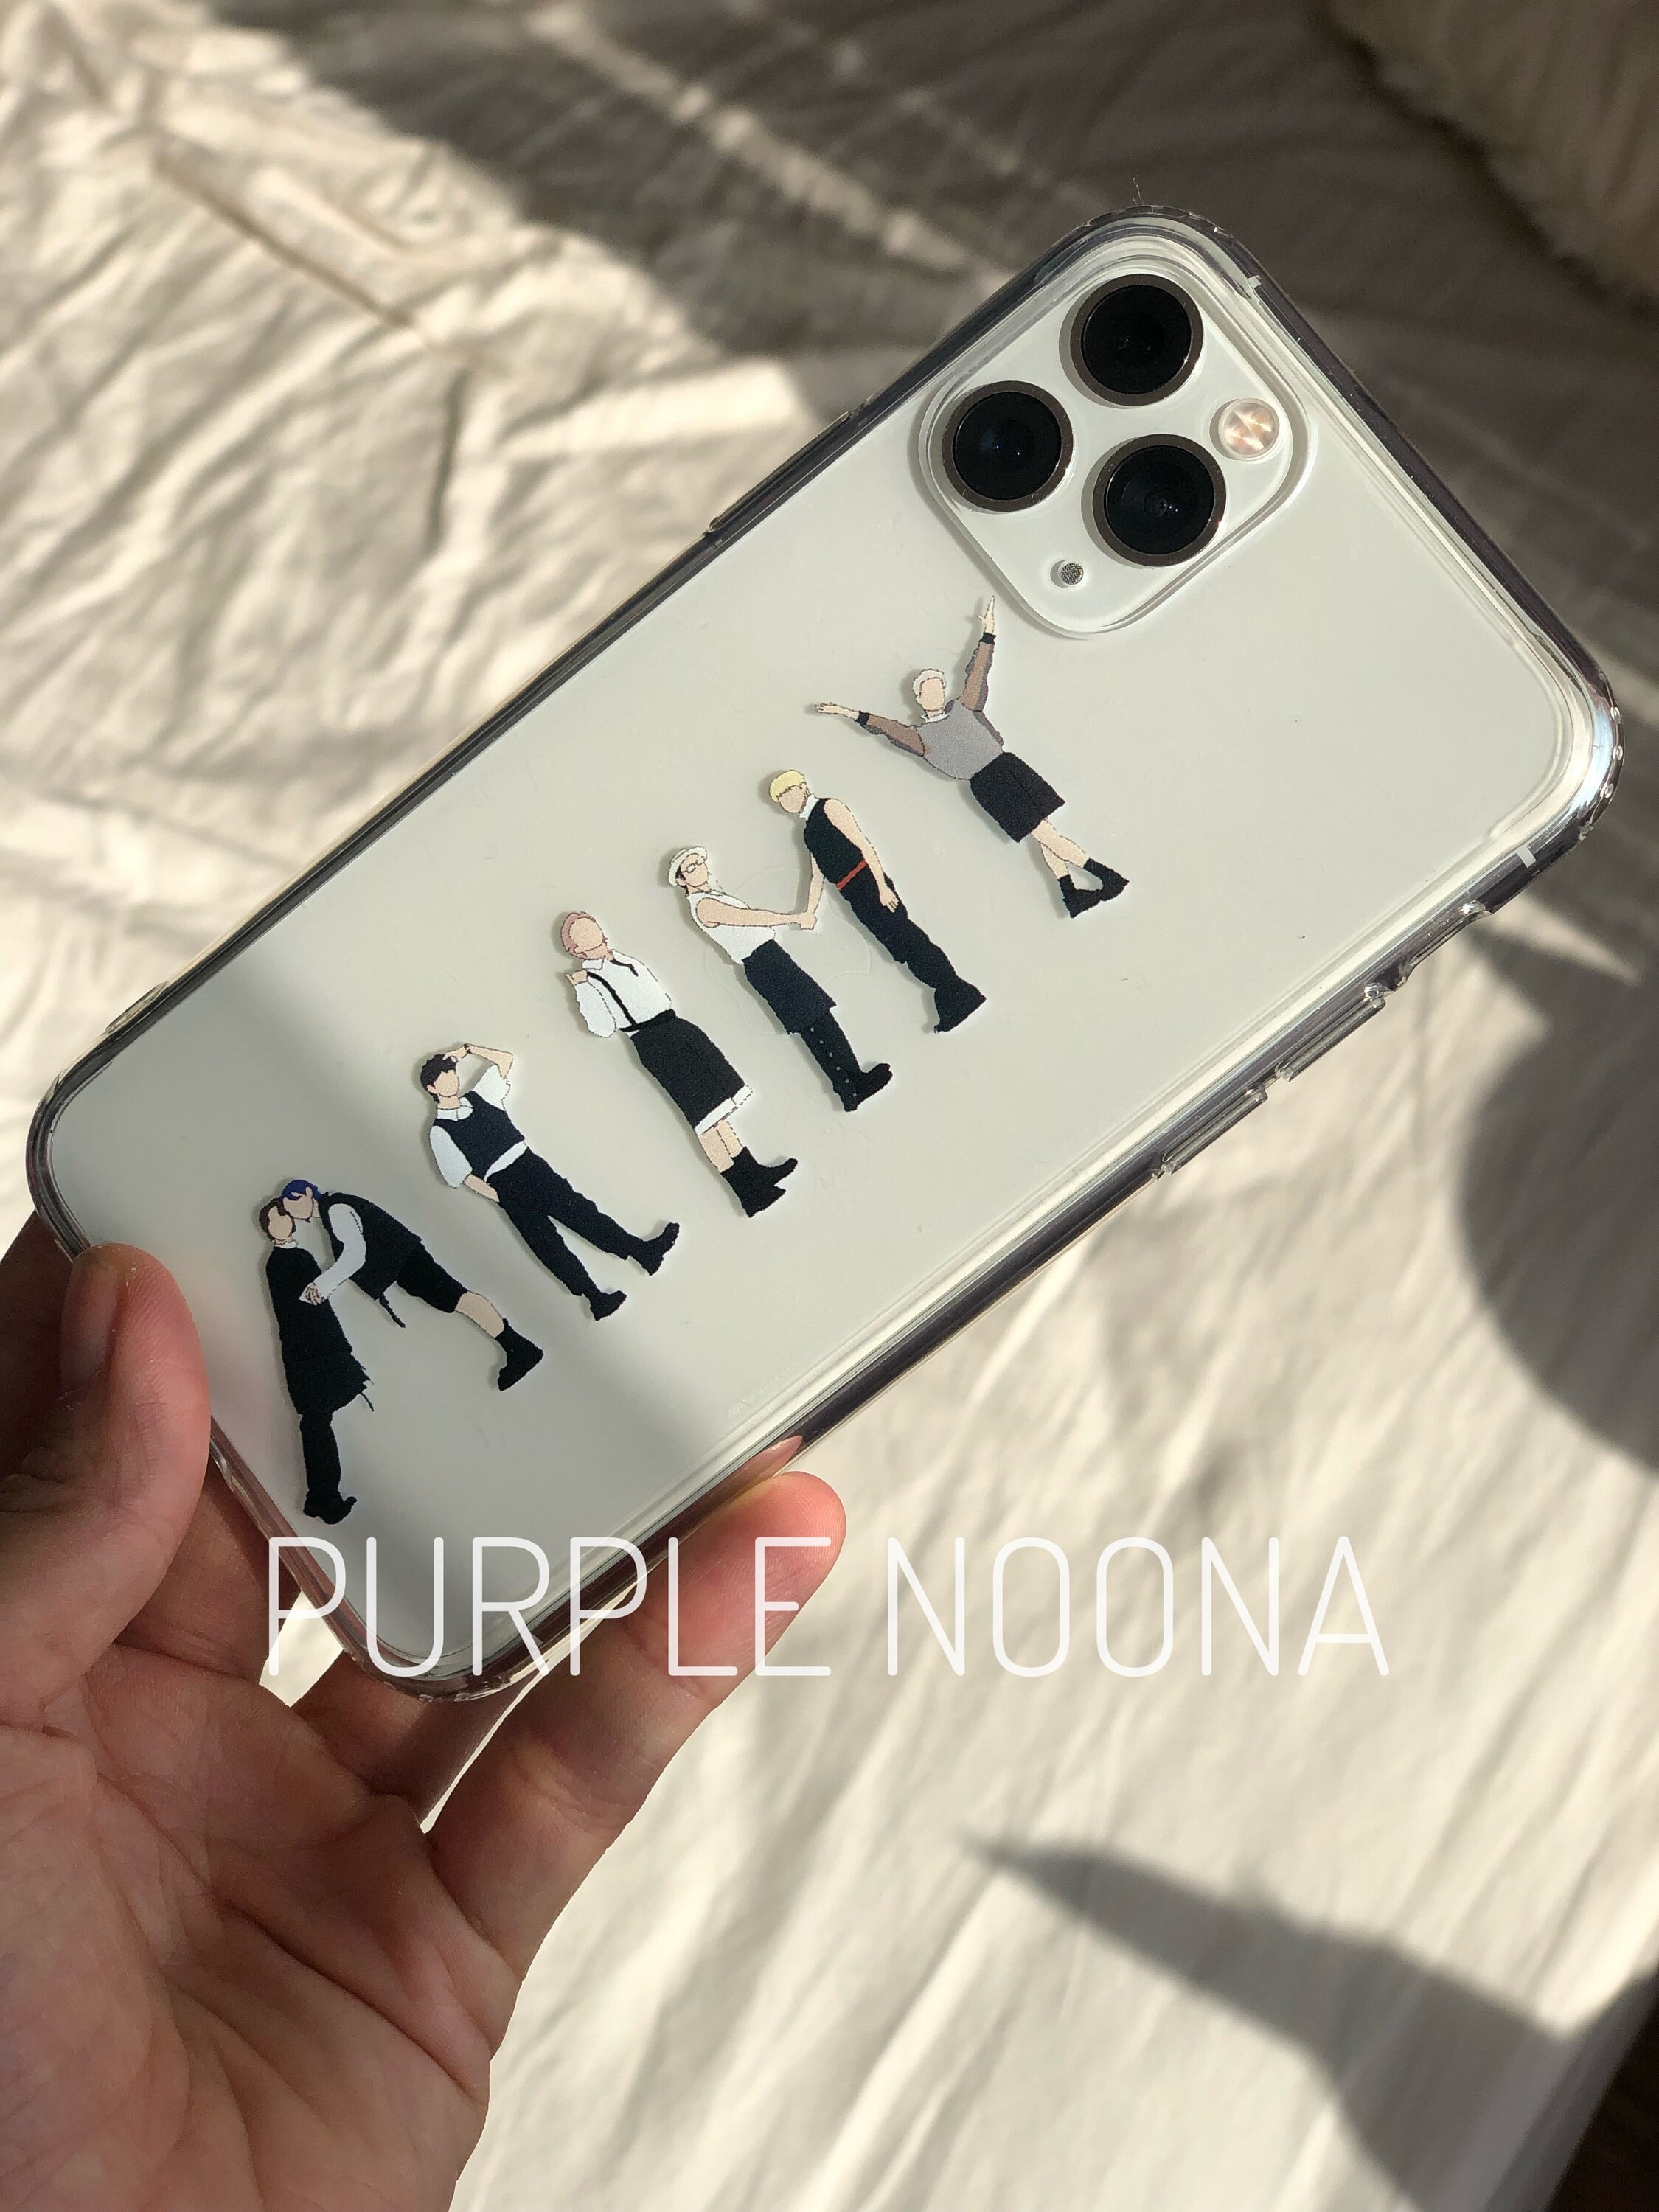 BTS Portrait Phone Cases for iPhones - Hello South Korea